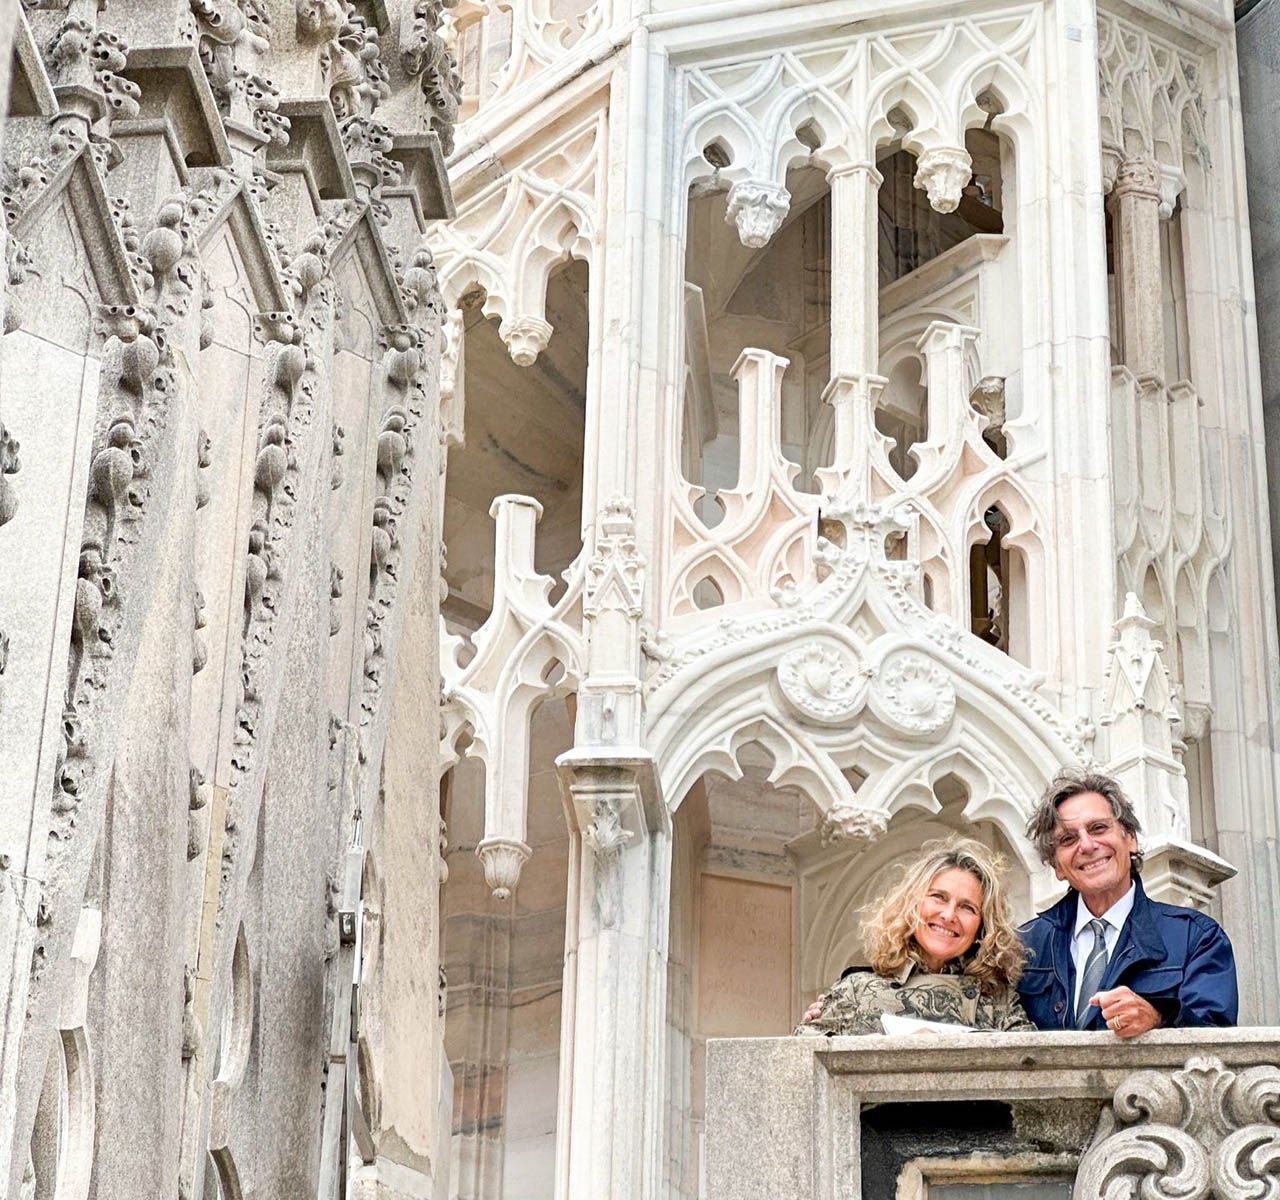 Celada partecipa al progetto di restauro del Duomo di Milano